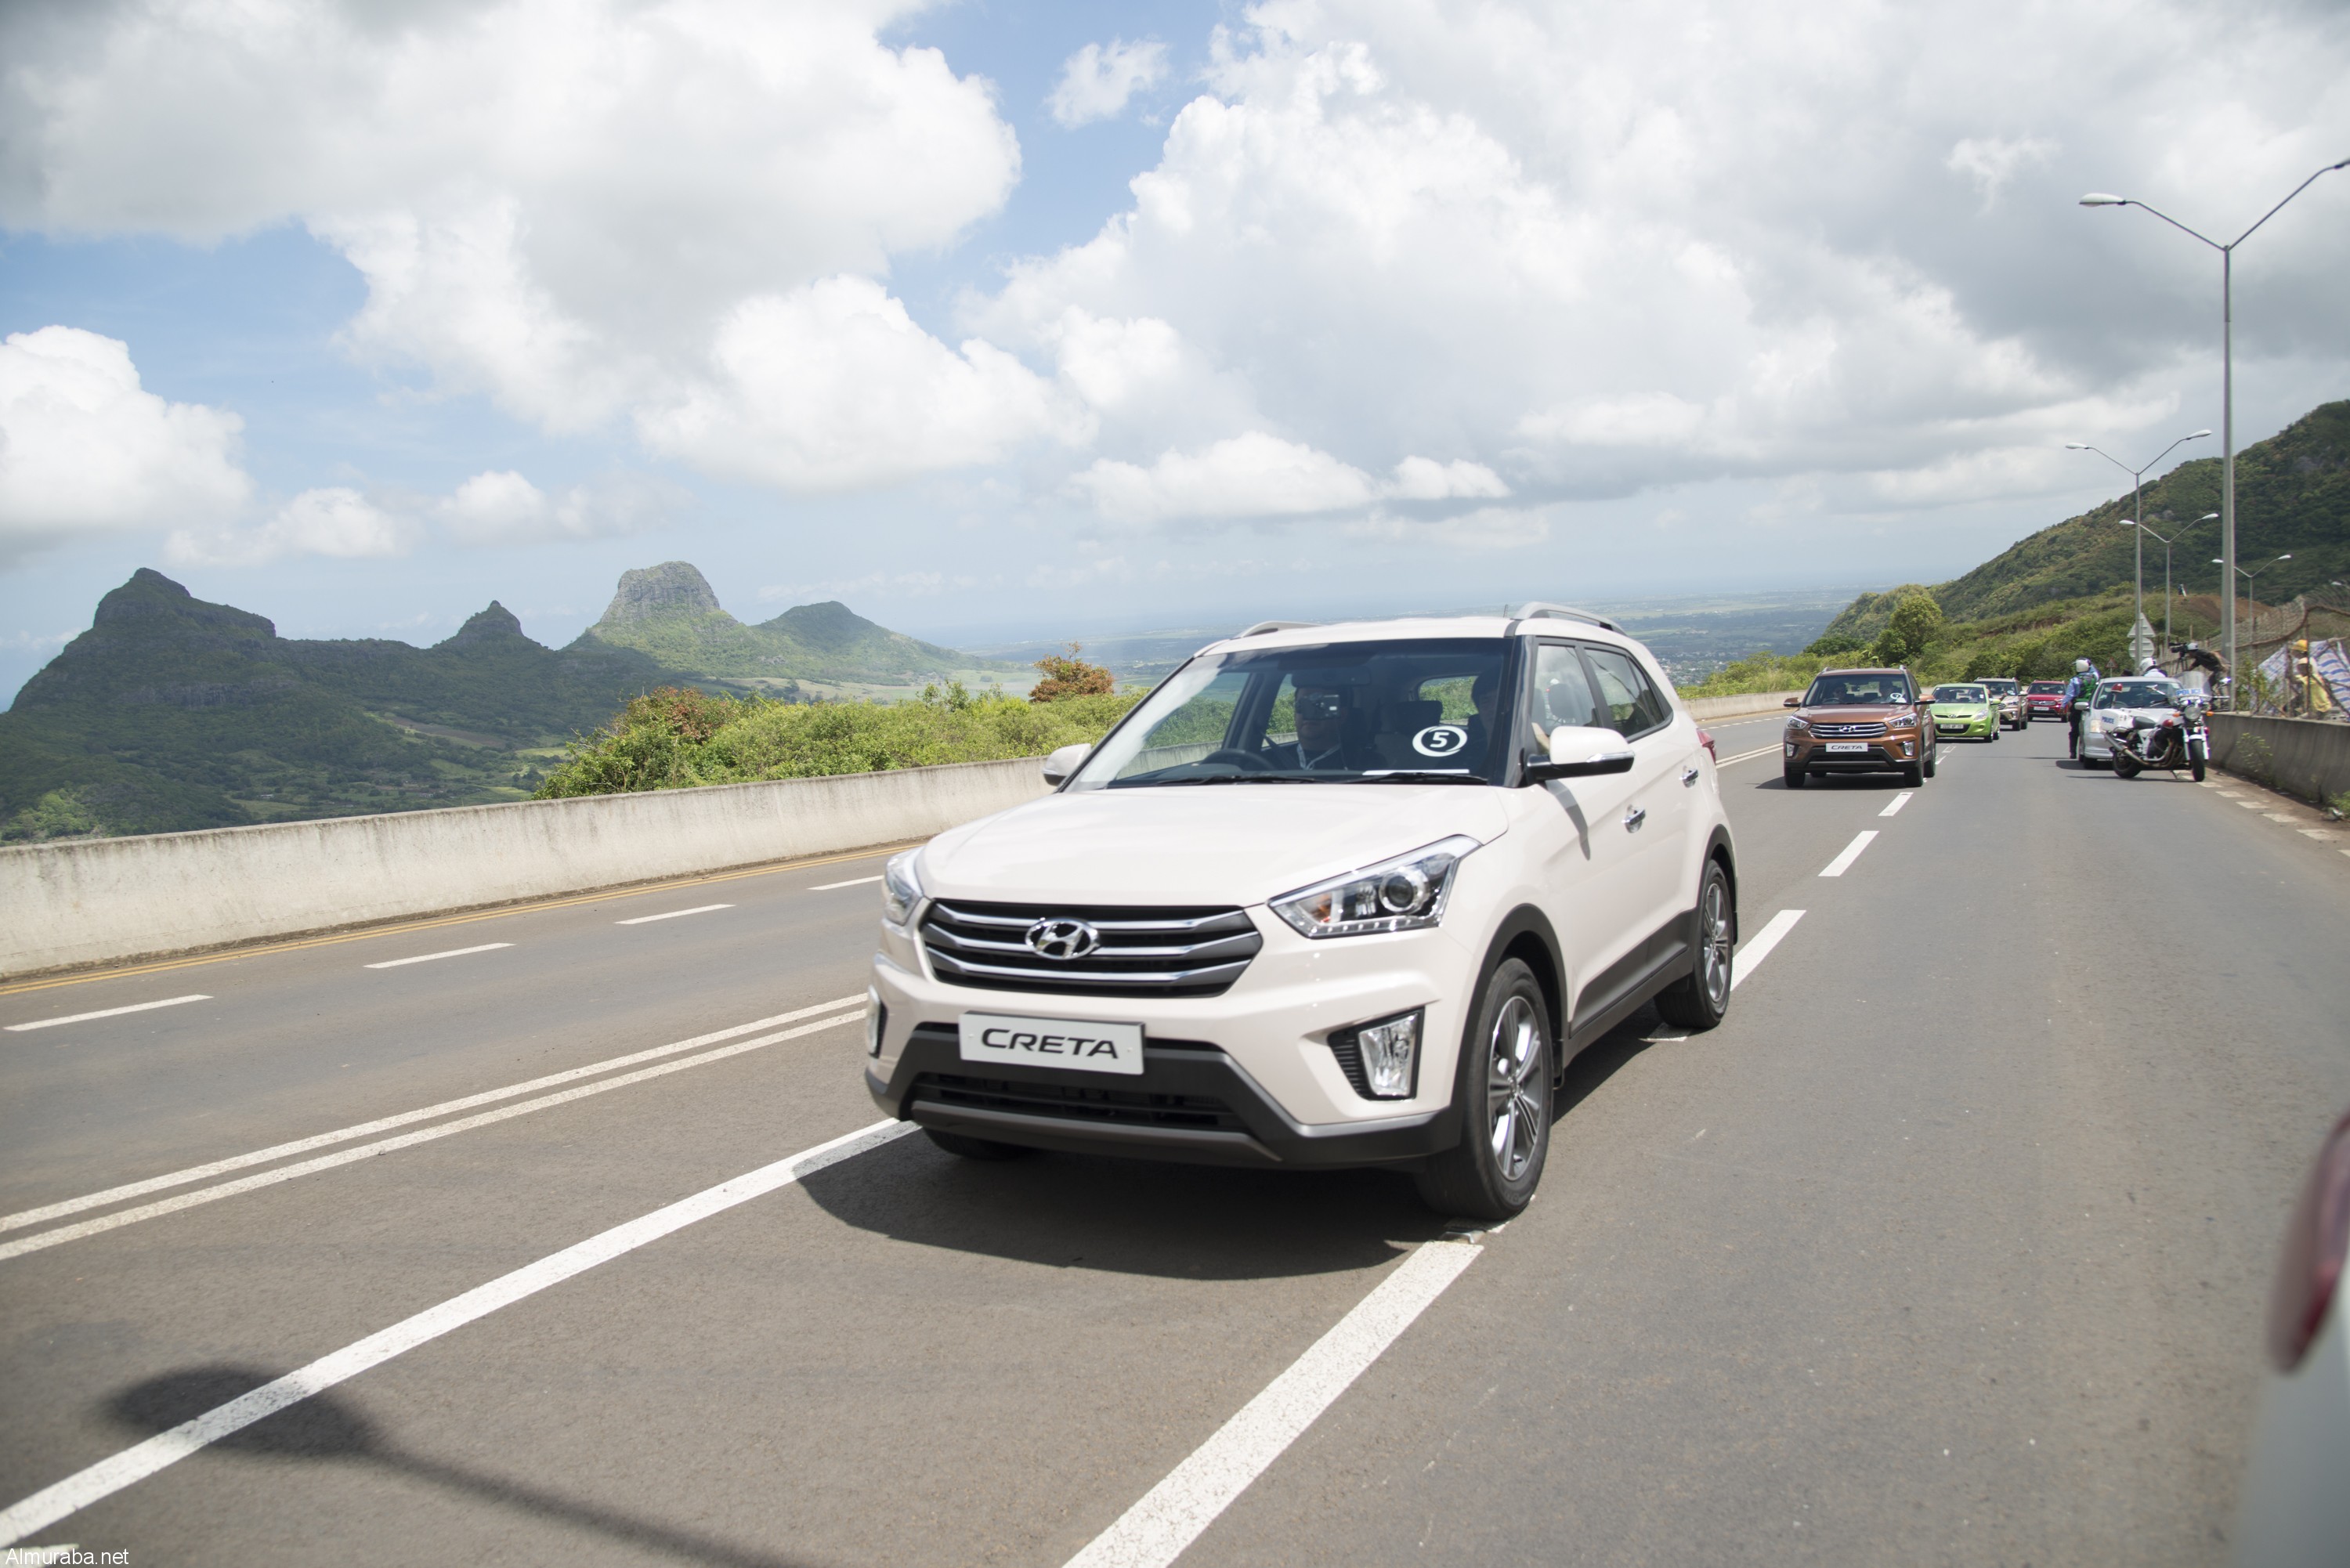 هيونداي كريتا 2016 الجديدة كلياً لأول مرة “تقرير وفيديو ومواصفات وصور واسعار” Hyundai Creta